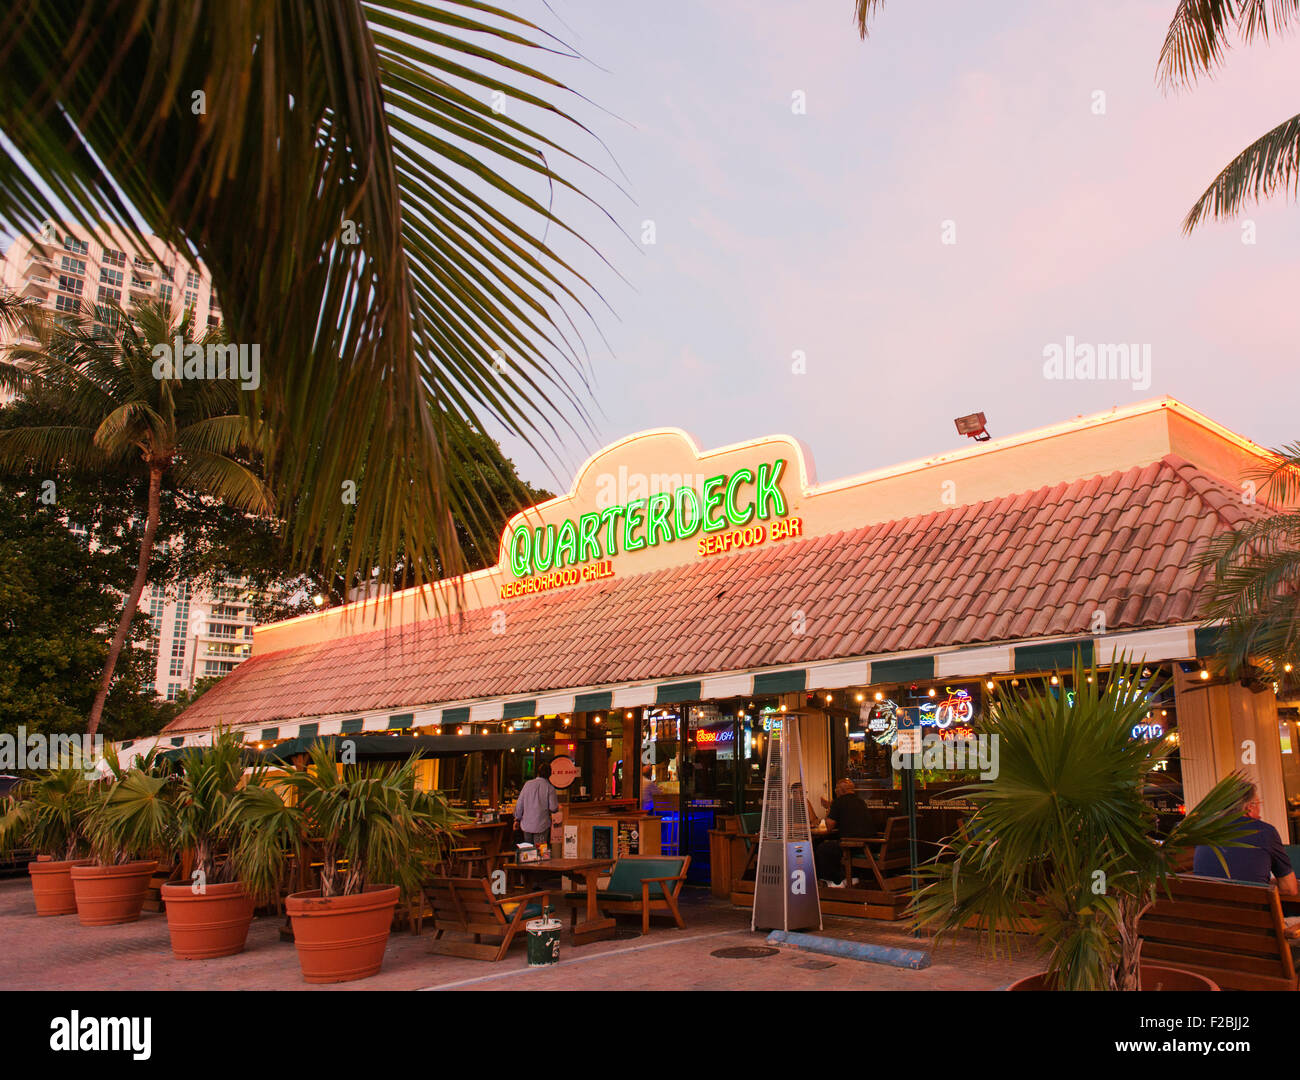 La plage arrière, un bar-restaurant près de la plage de Fort Lauderdale. Banque D'Images